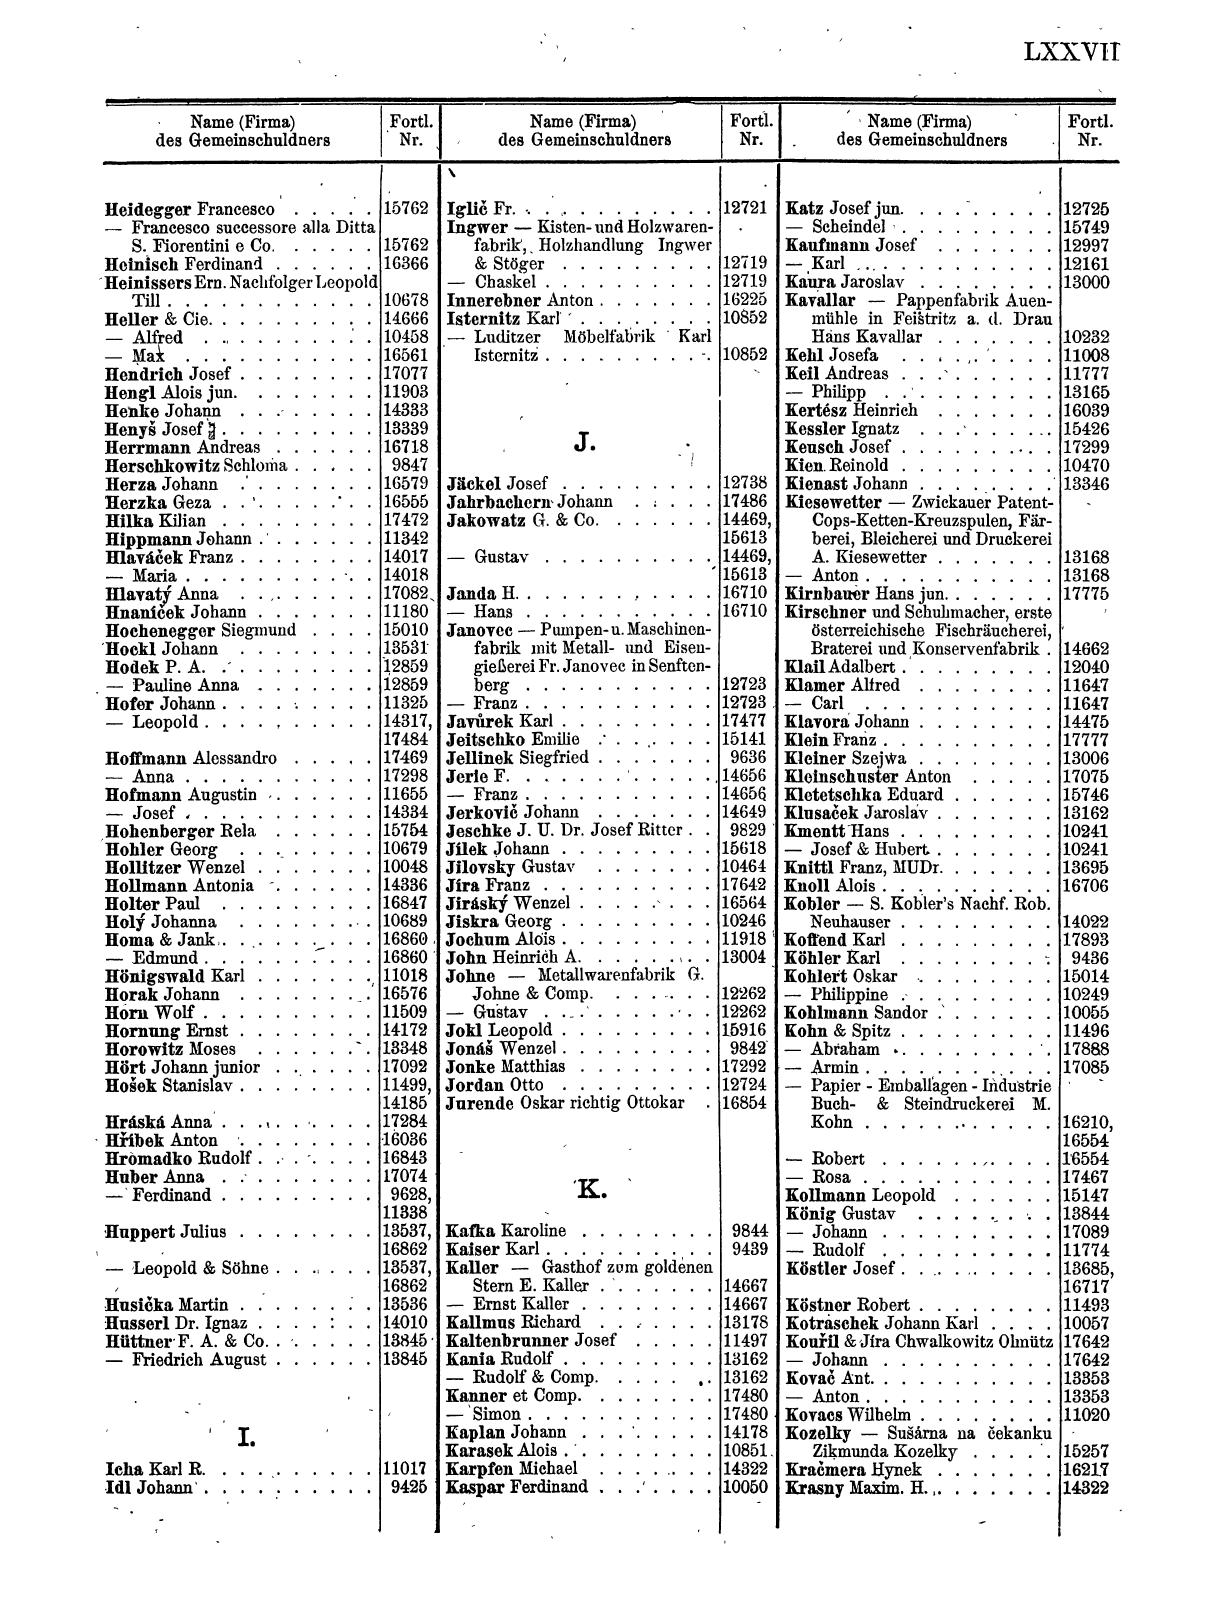 Zentralblatt für die Eintragungen in das Handelsregister 1913, Teil 2 - Seite 81